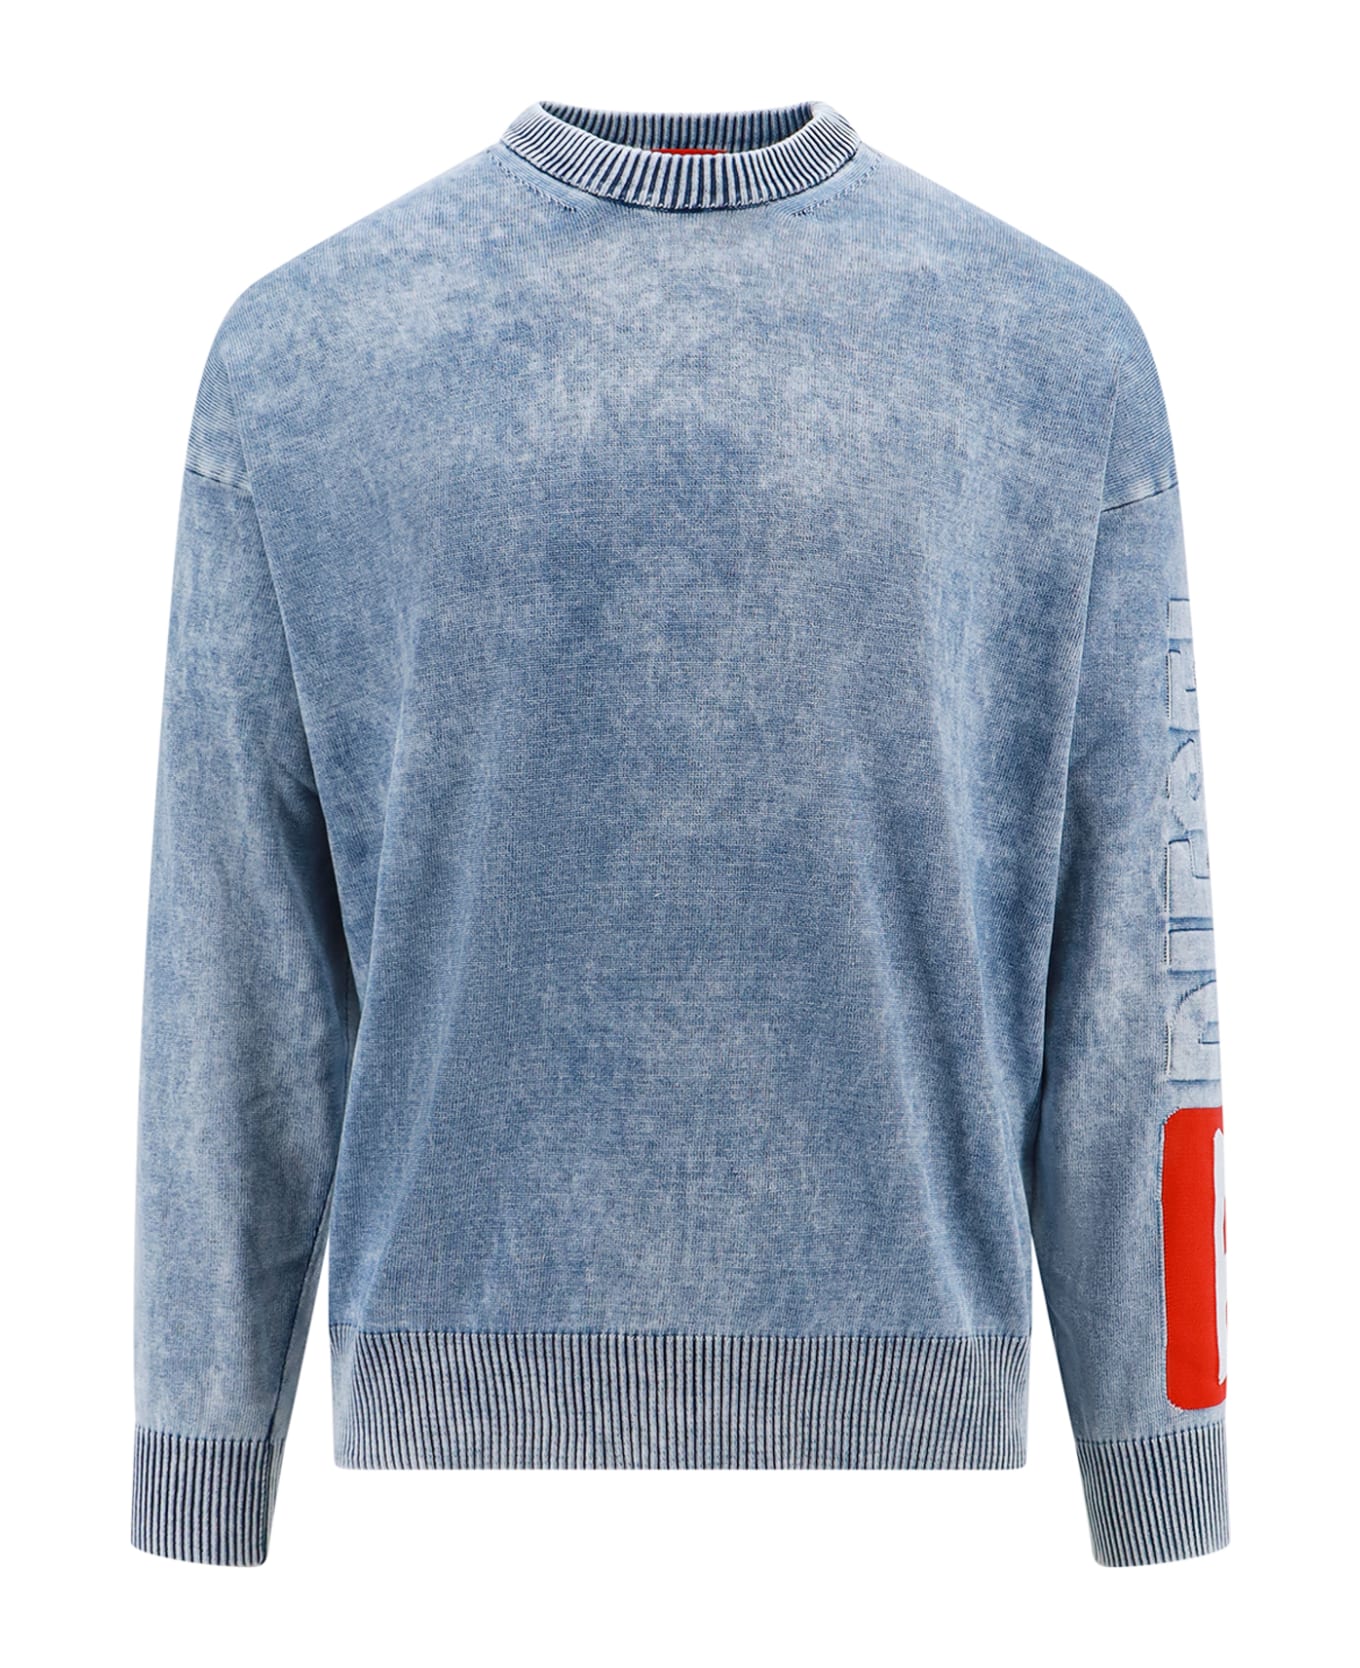 Diesel K-zeros Sweater - Blue ニットウェア